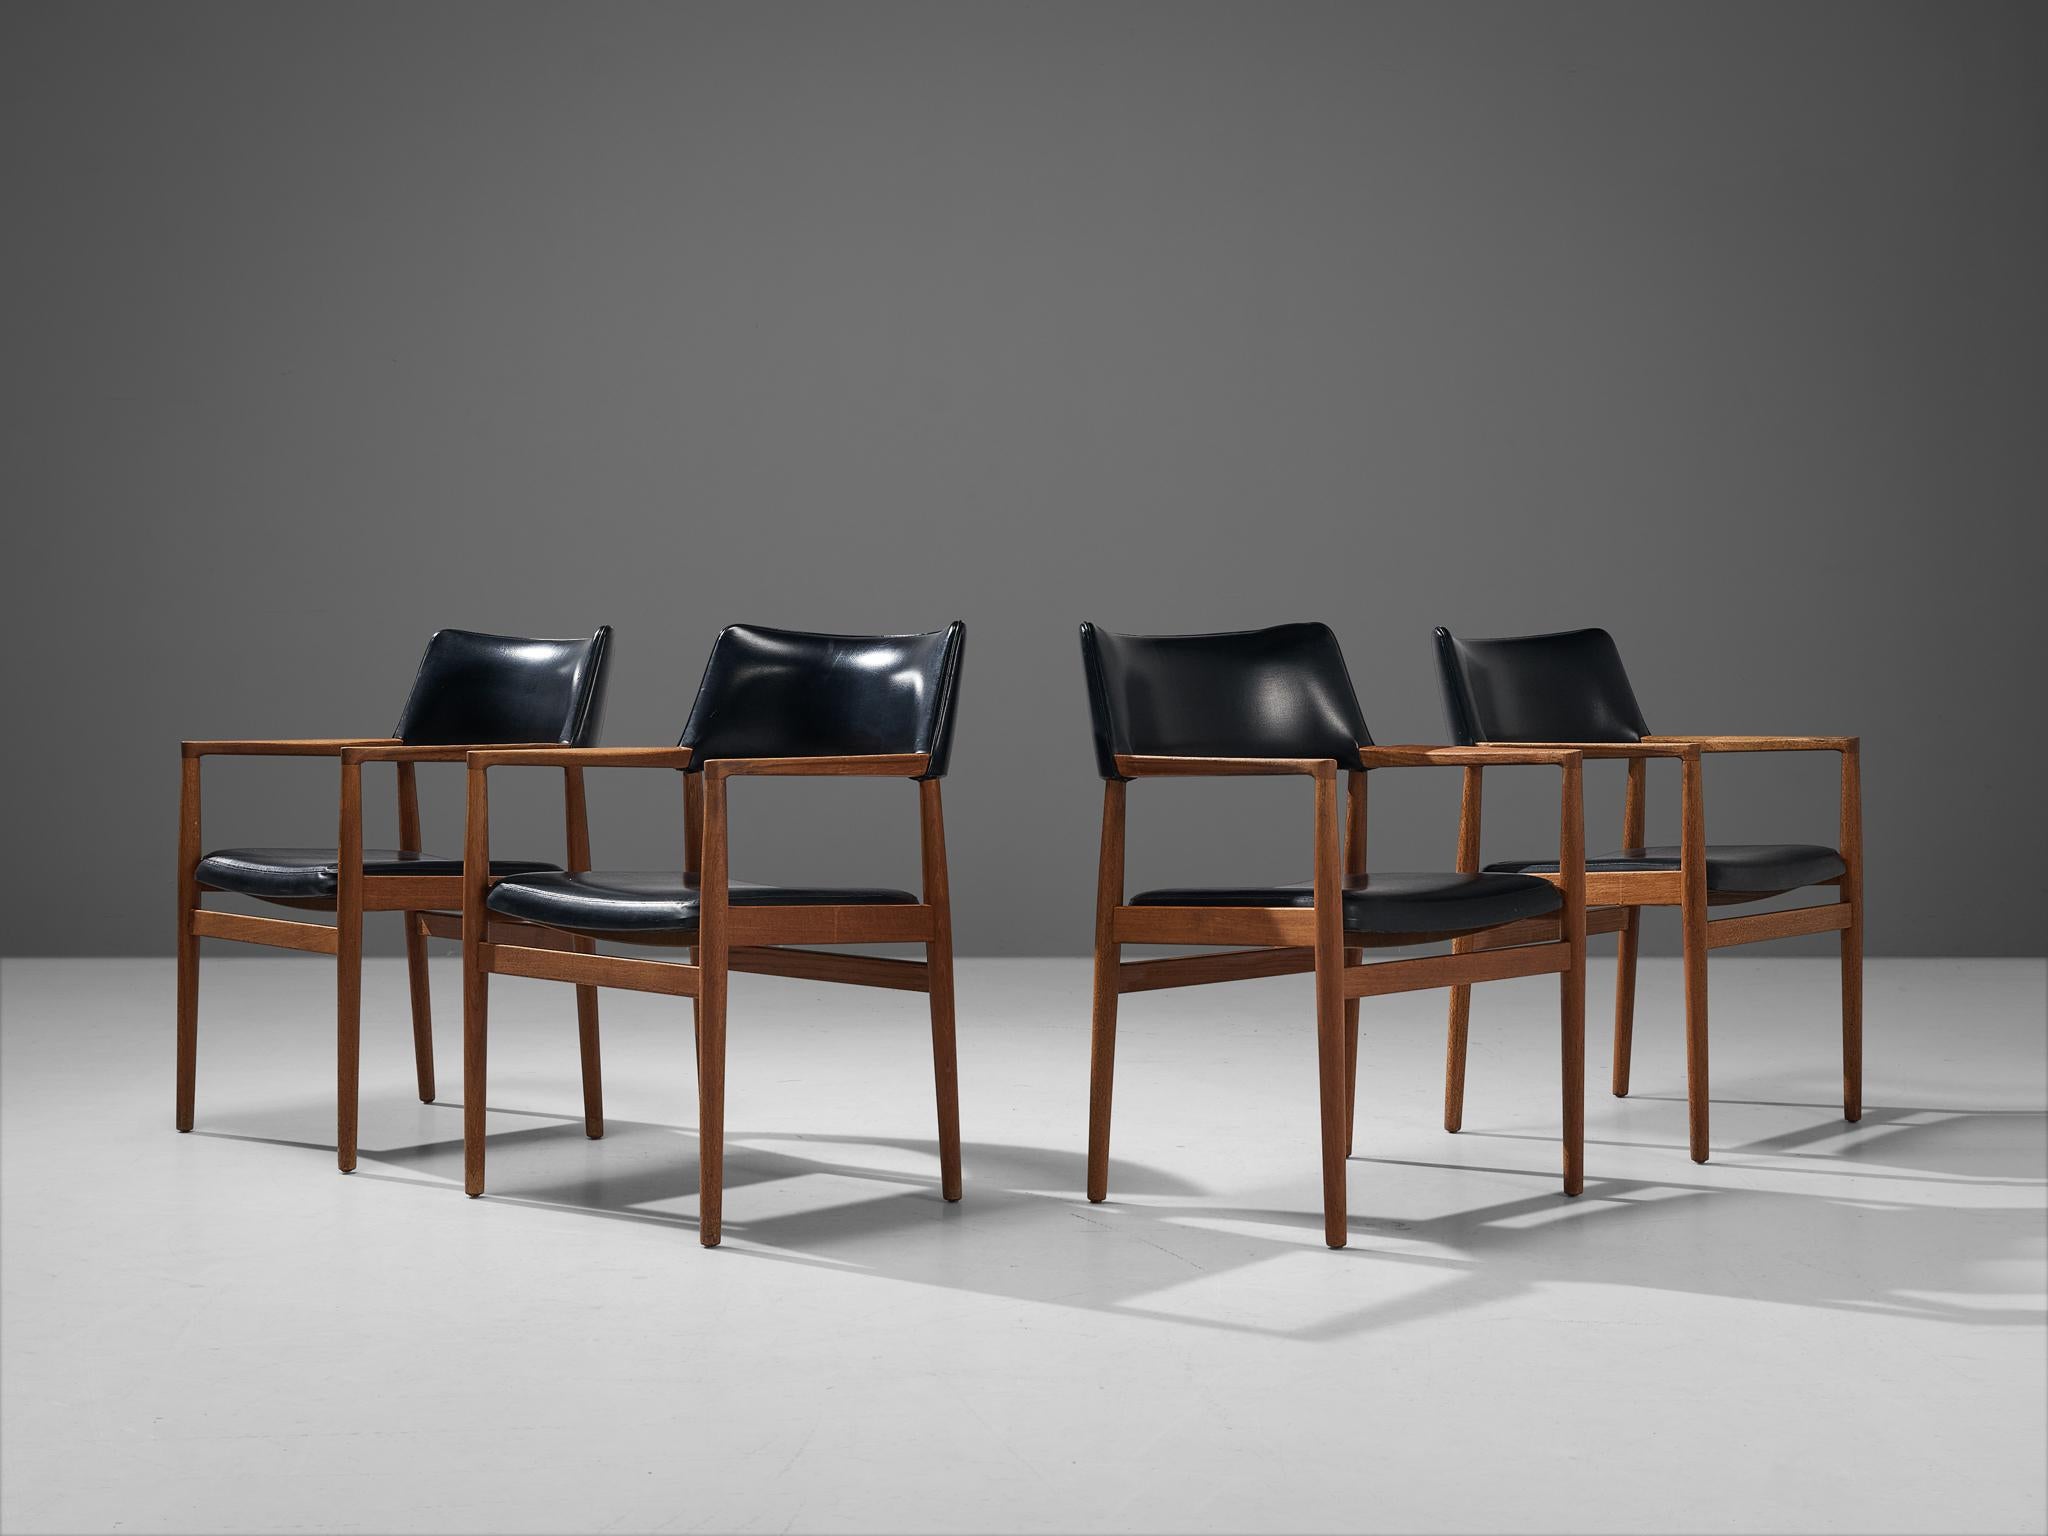 Ensemble de quatre chaises de salle à manger, similicuir, teck, Danemark, années 1960.

Cet ensemble de quatre fauteuils présente de fortes ressemblances avec la chaise Tove et Edvard Kindt-Larsen pour Gustav Bertelsen & Co, conçue en 1958. Cet